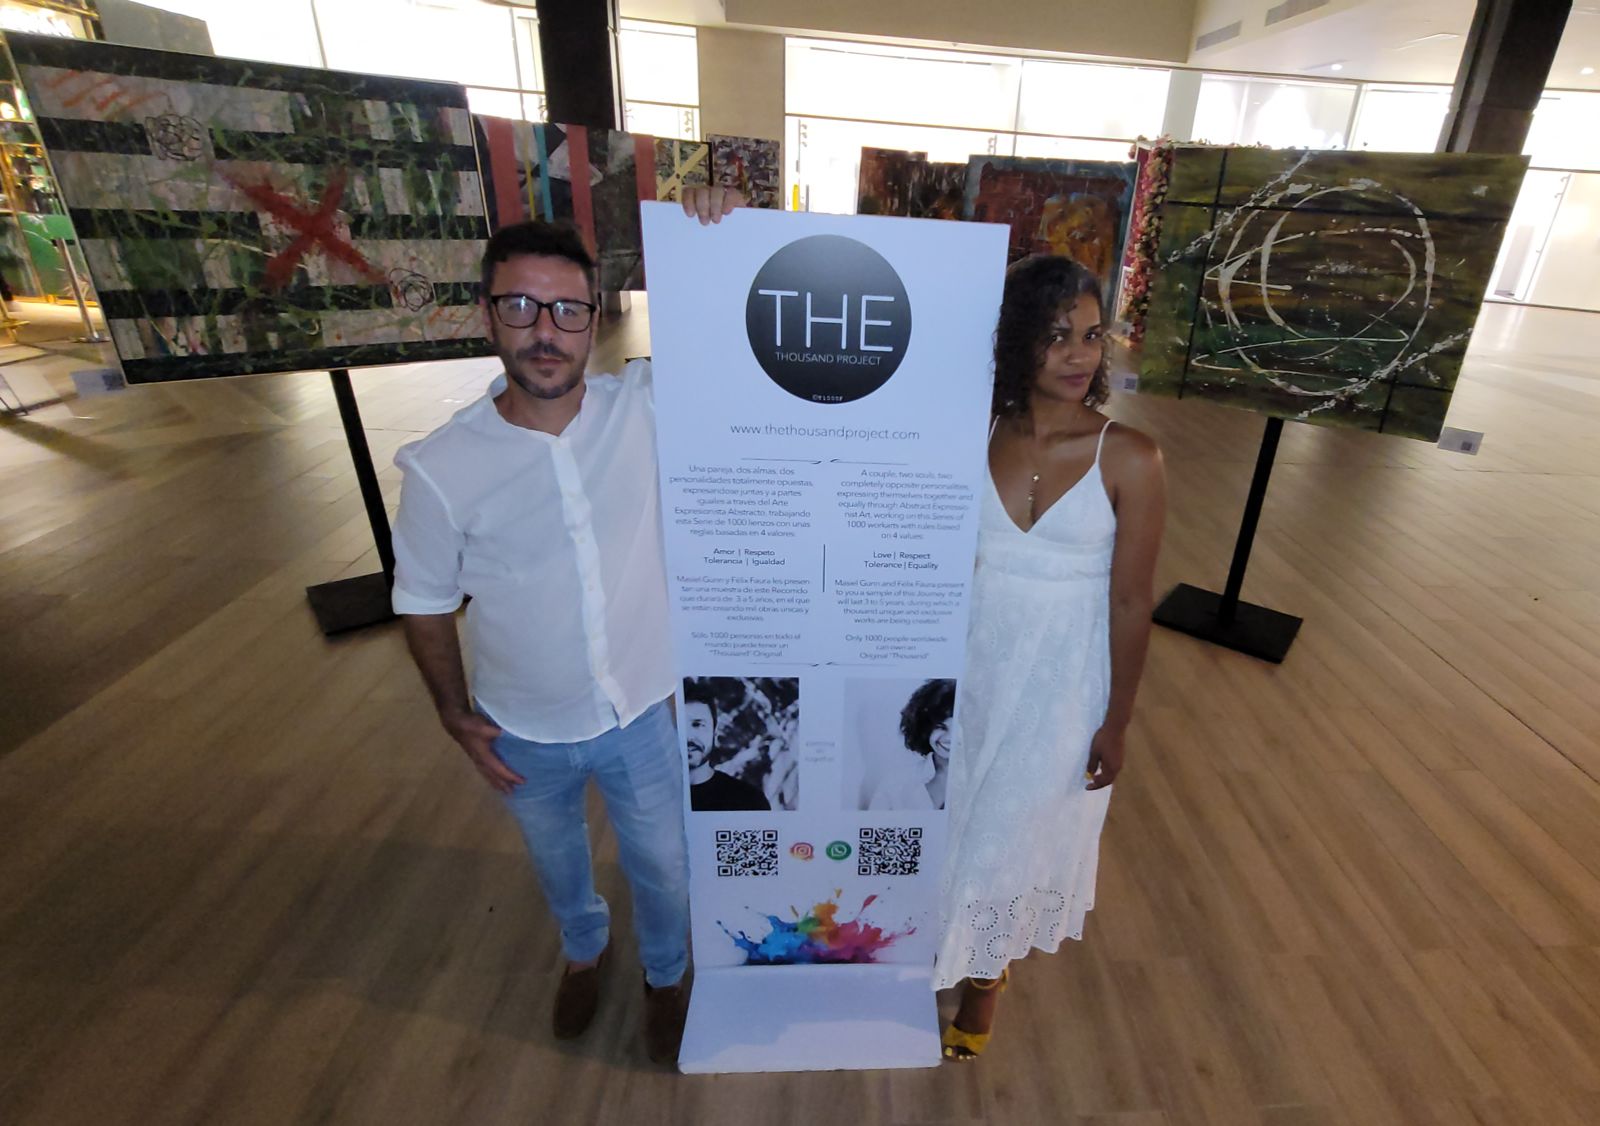 Solo por este mes se exhiben las obras de "The Thousand Project" en Blue Mall Punta Cana